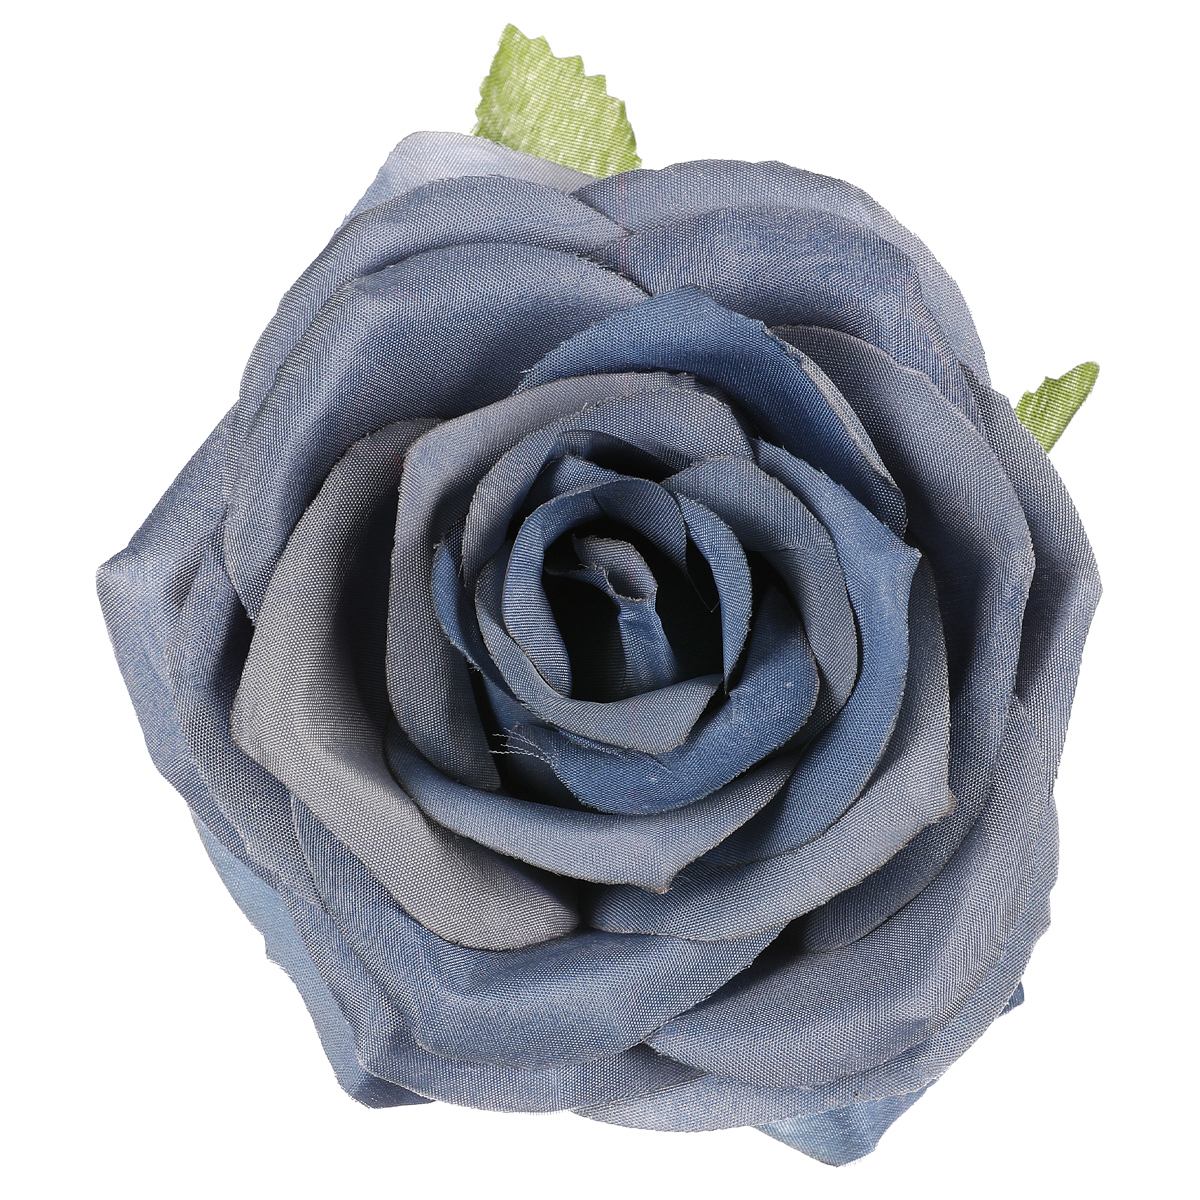 Růže, barva modrá. Květina umělá vazbová. Cena za balení 12 ks